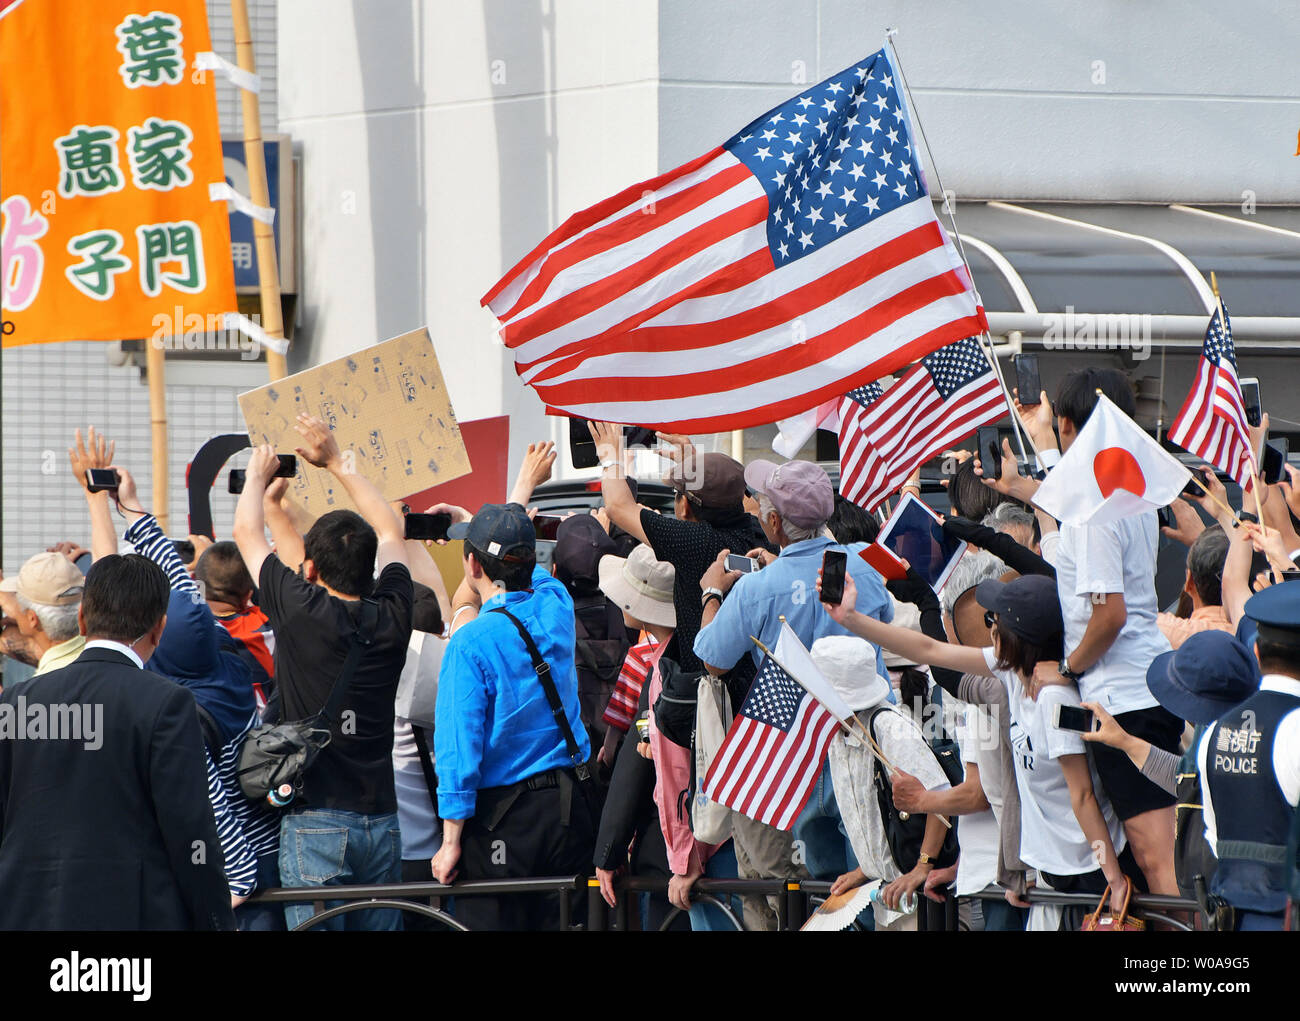 Besucher wave US-Flaggen, wie sie für die US-Präsidenten warten an einem Grand Sumo Turnier an der Ryogoku Kokugikan in Tokyo Japan, am 26. Mai 2019 eintreffen. Foto von keizo Mori/UPI Stockfoto